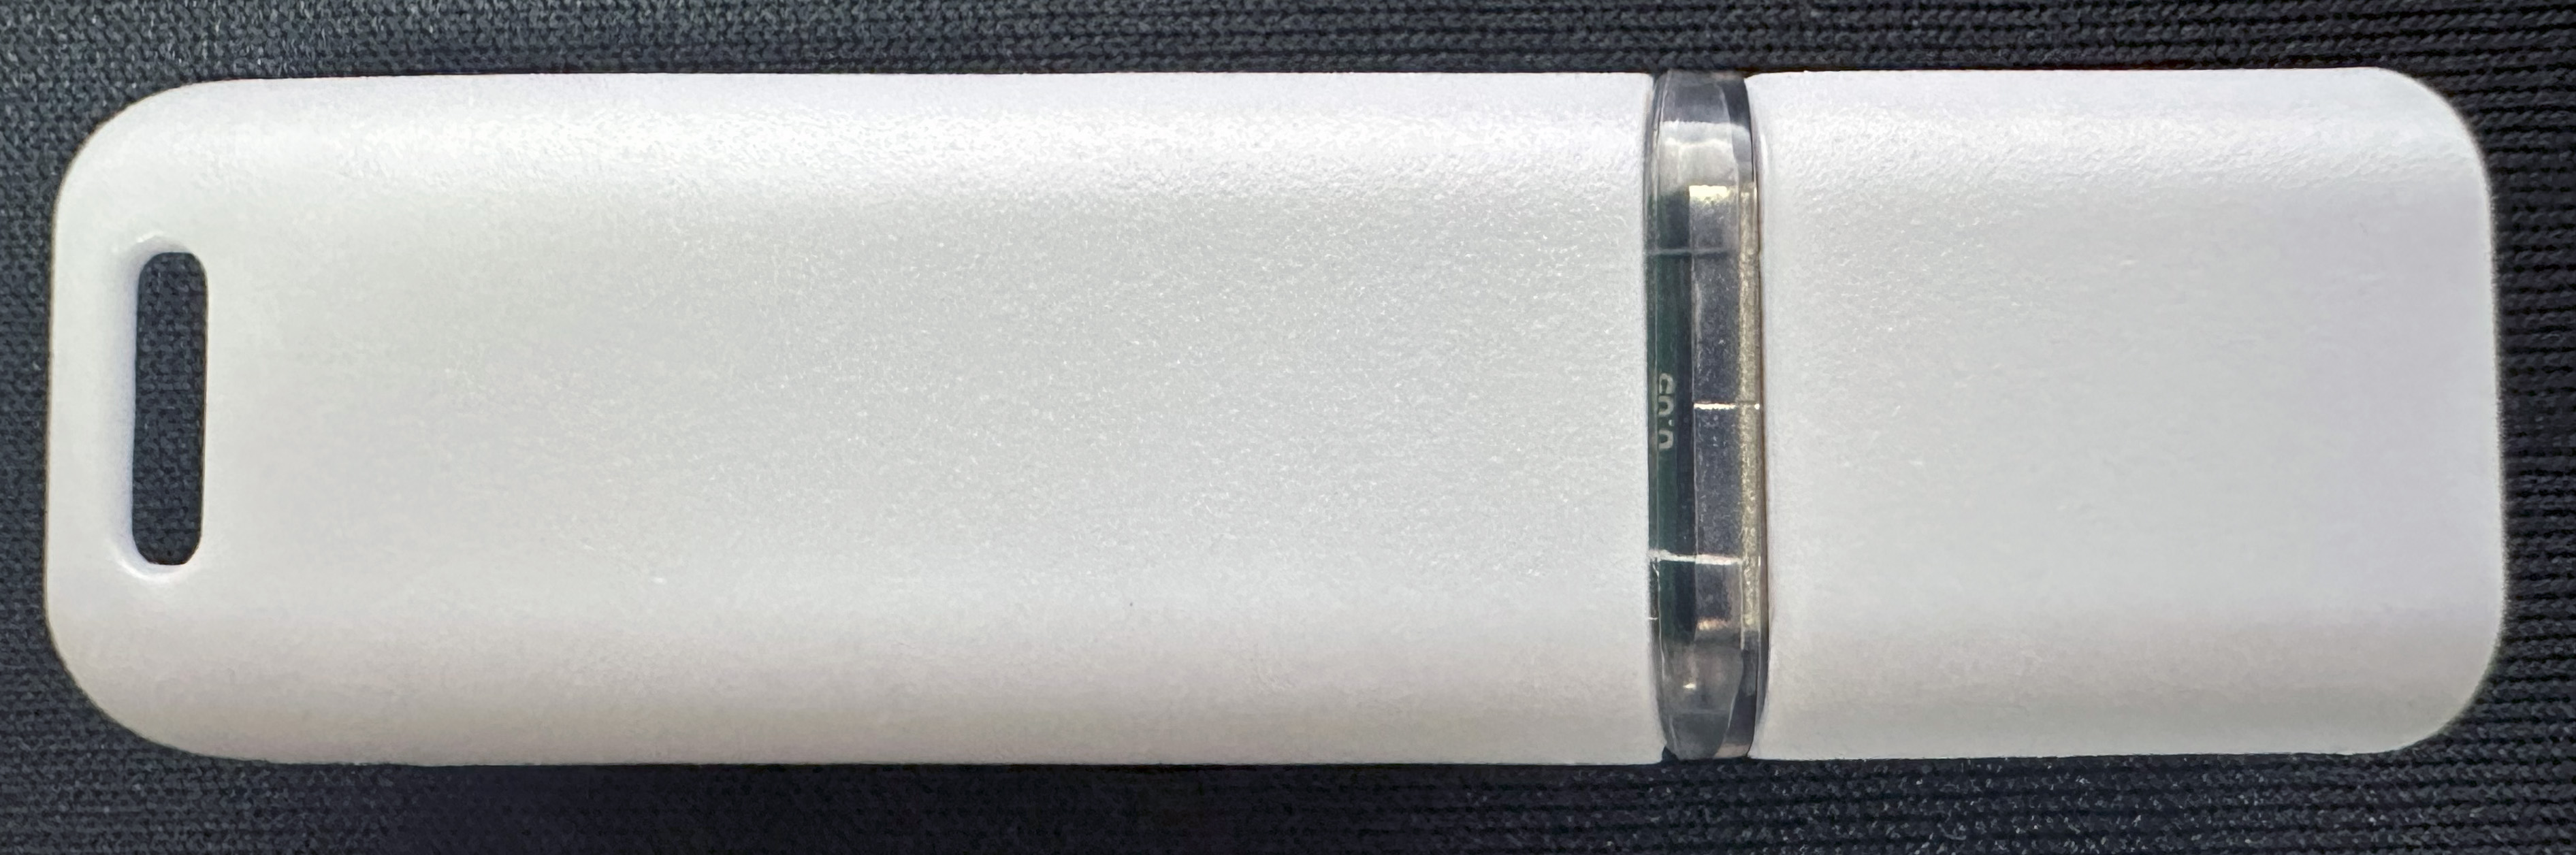 HIDISC USB2.0 USB MEMORY 64GB (HDUF113C64G2) Back